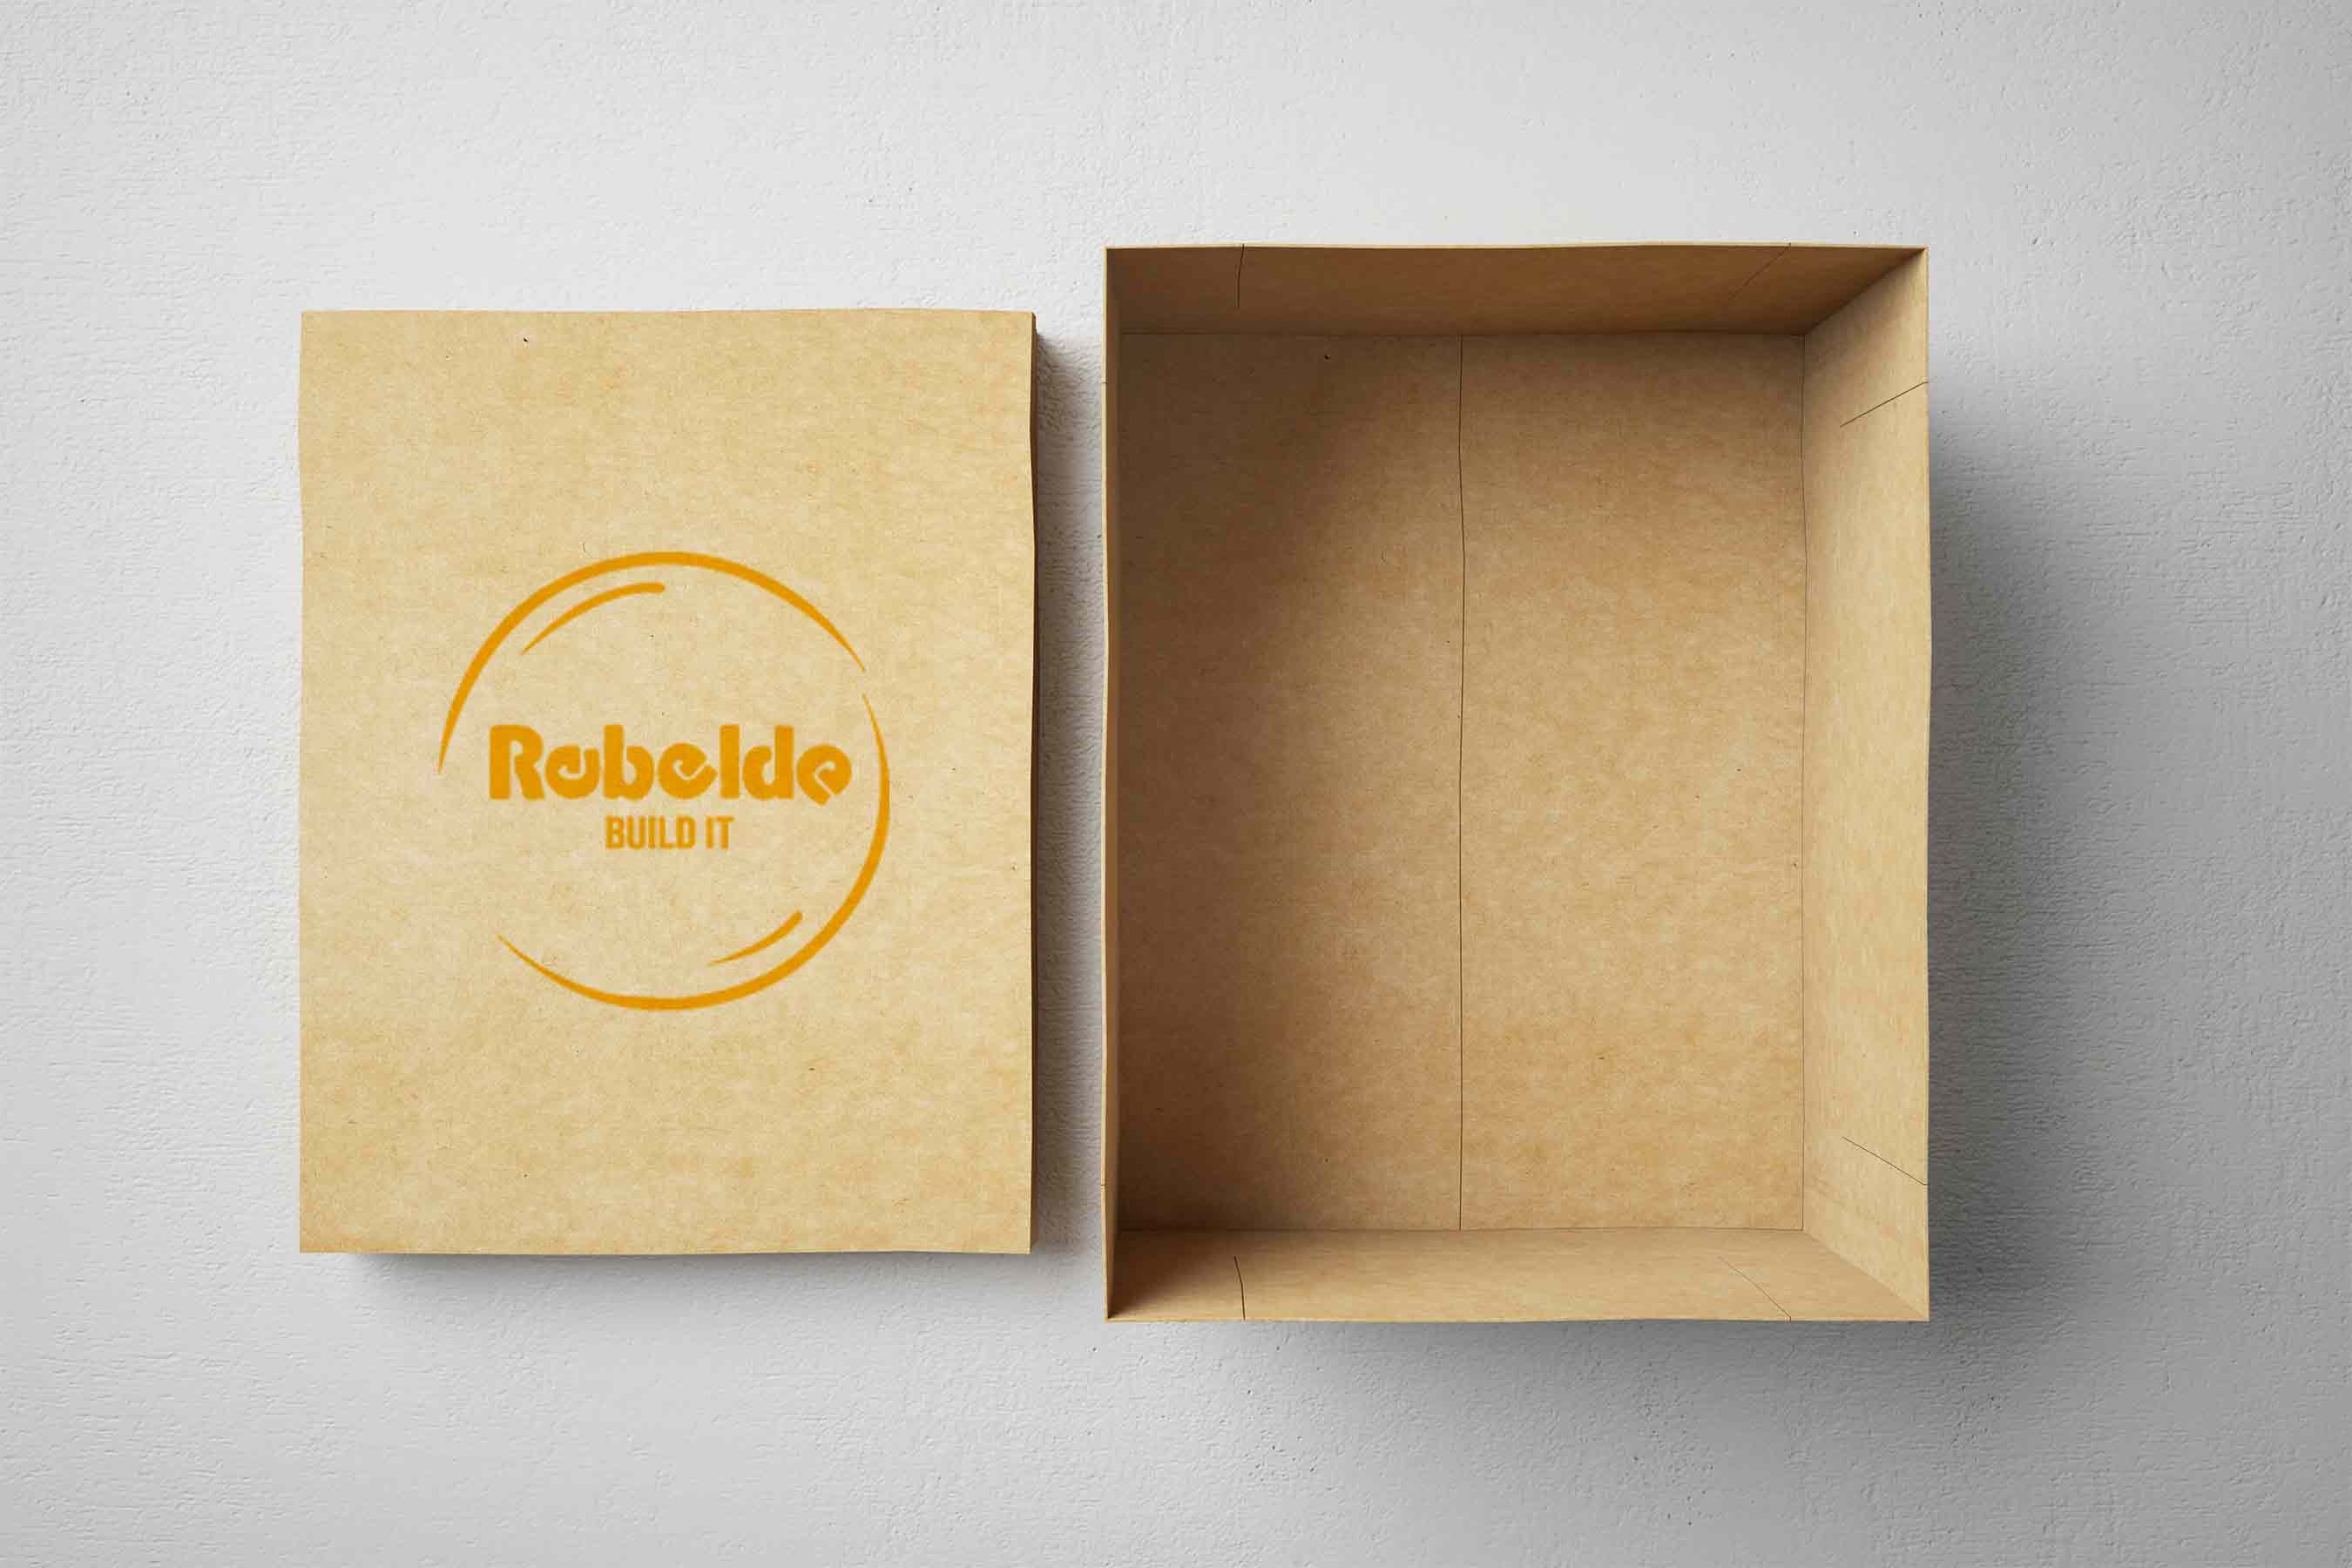 Boîtes en carton pour envoi personnalisé avec impression – Rebelde Build It